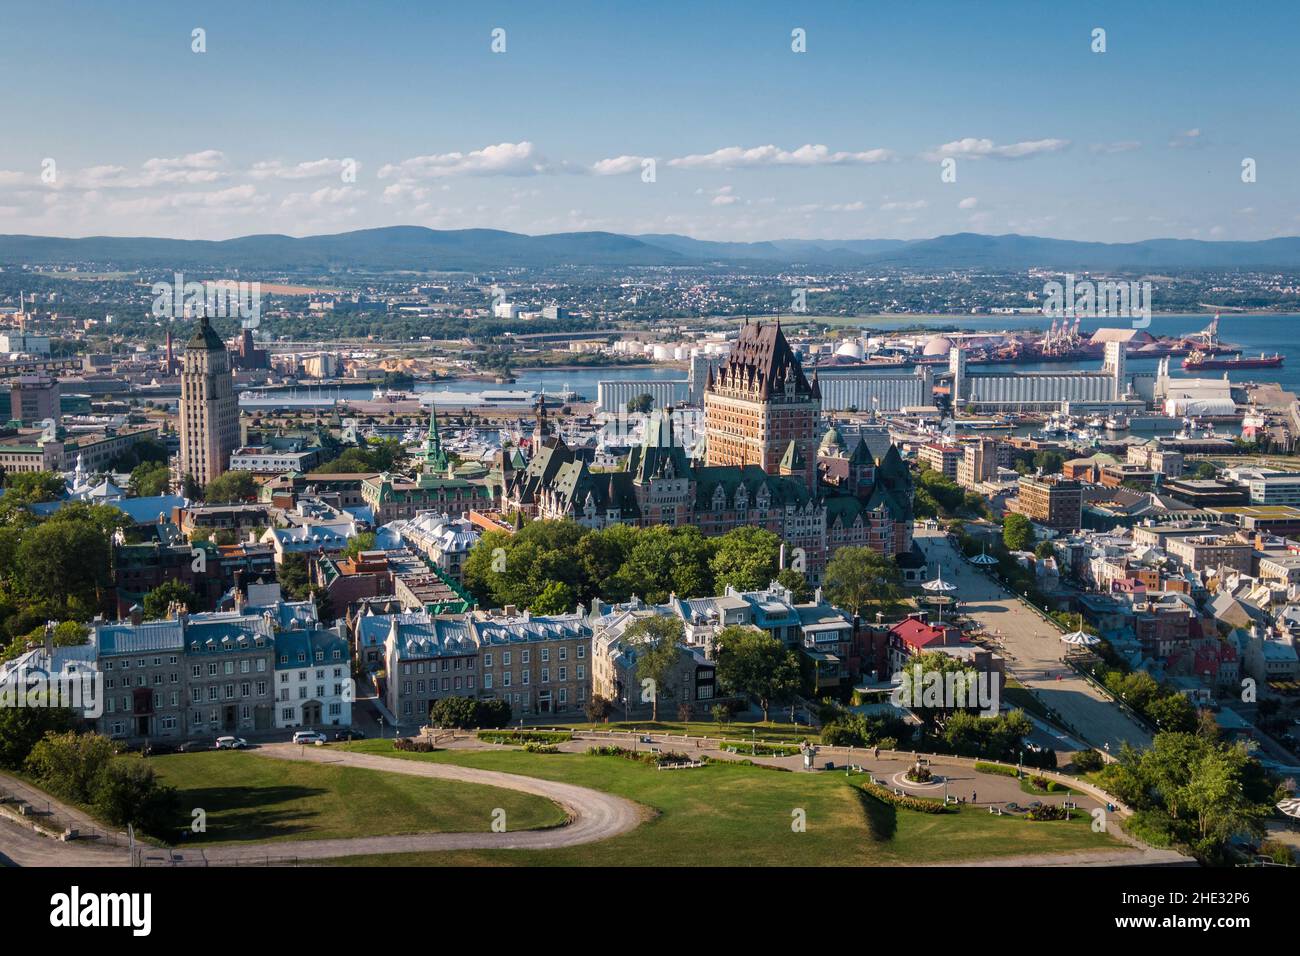 Vista aérea de la ciudad de Quebec incluyendo el histórico castillo Frontenac durante el verano en Quebec, Canadá. Foto de stock